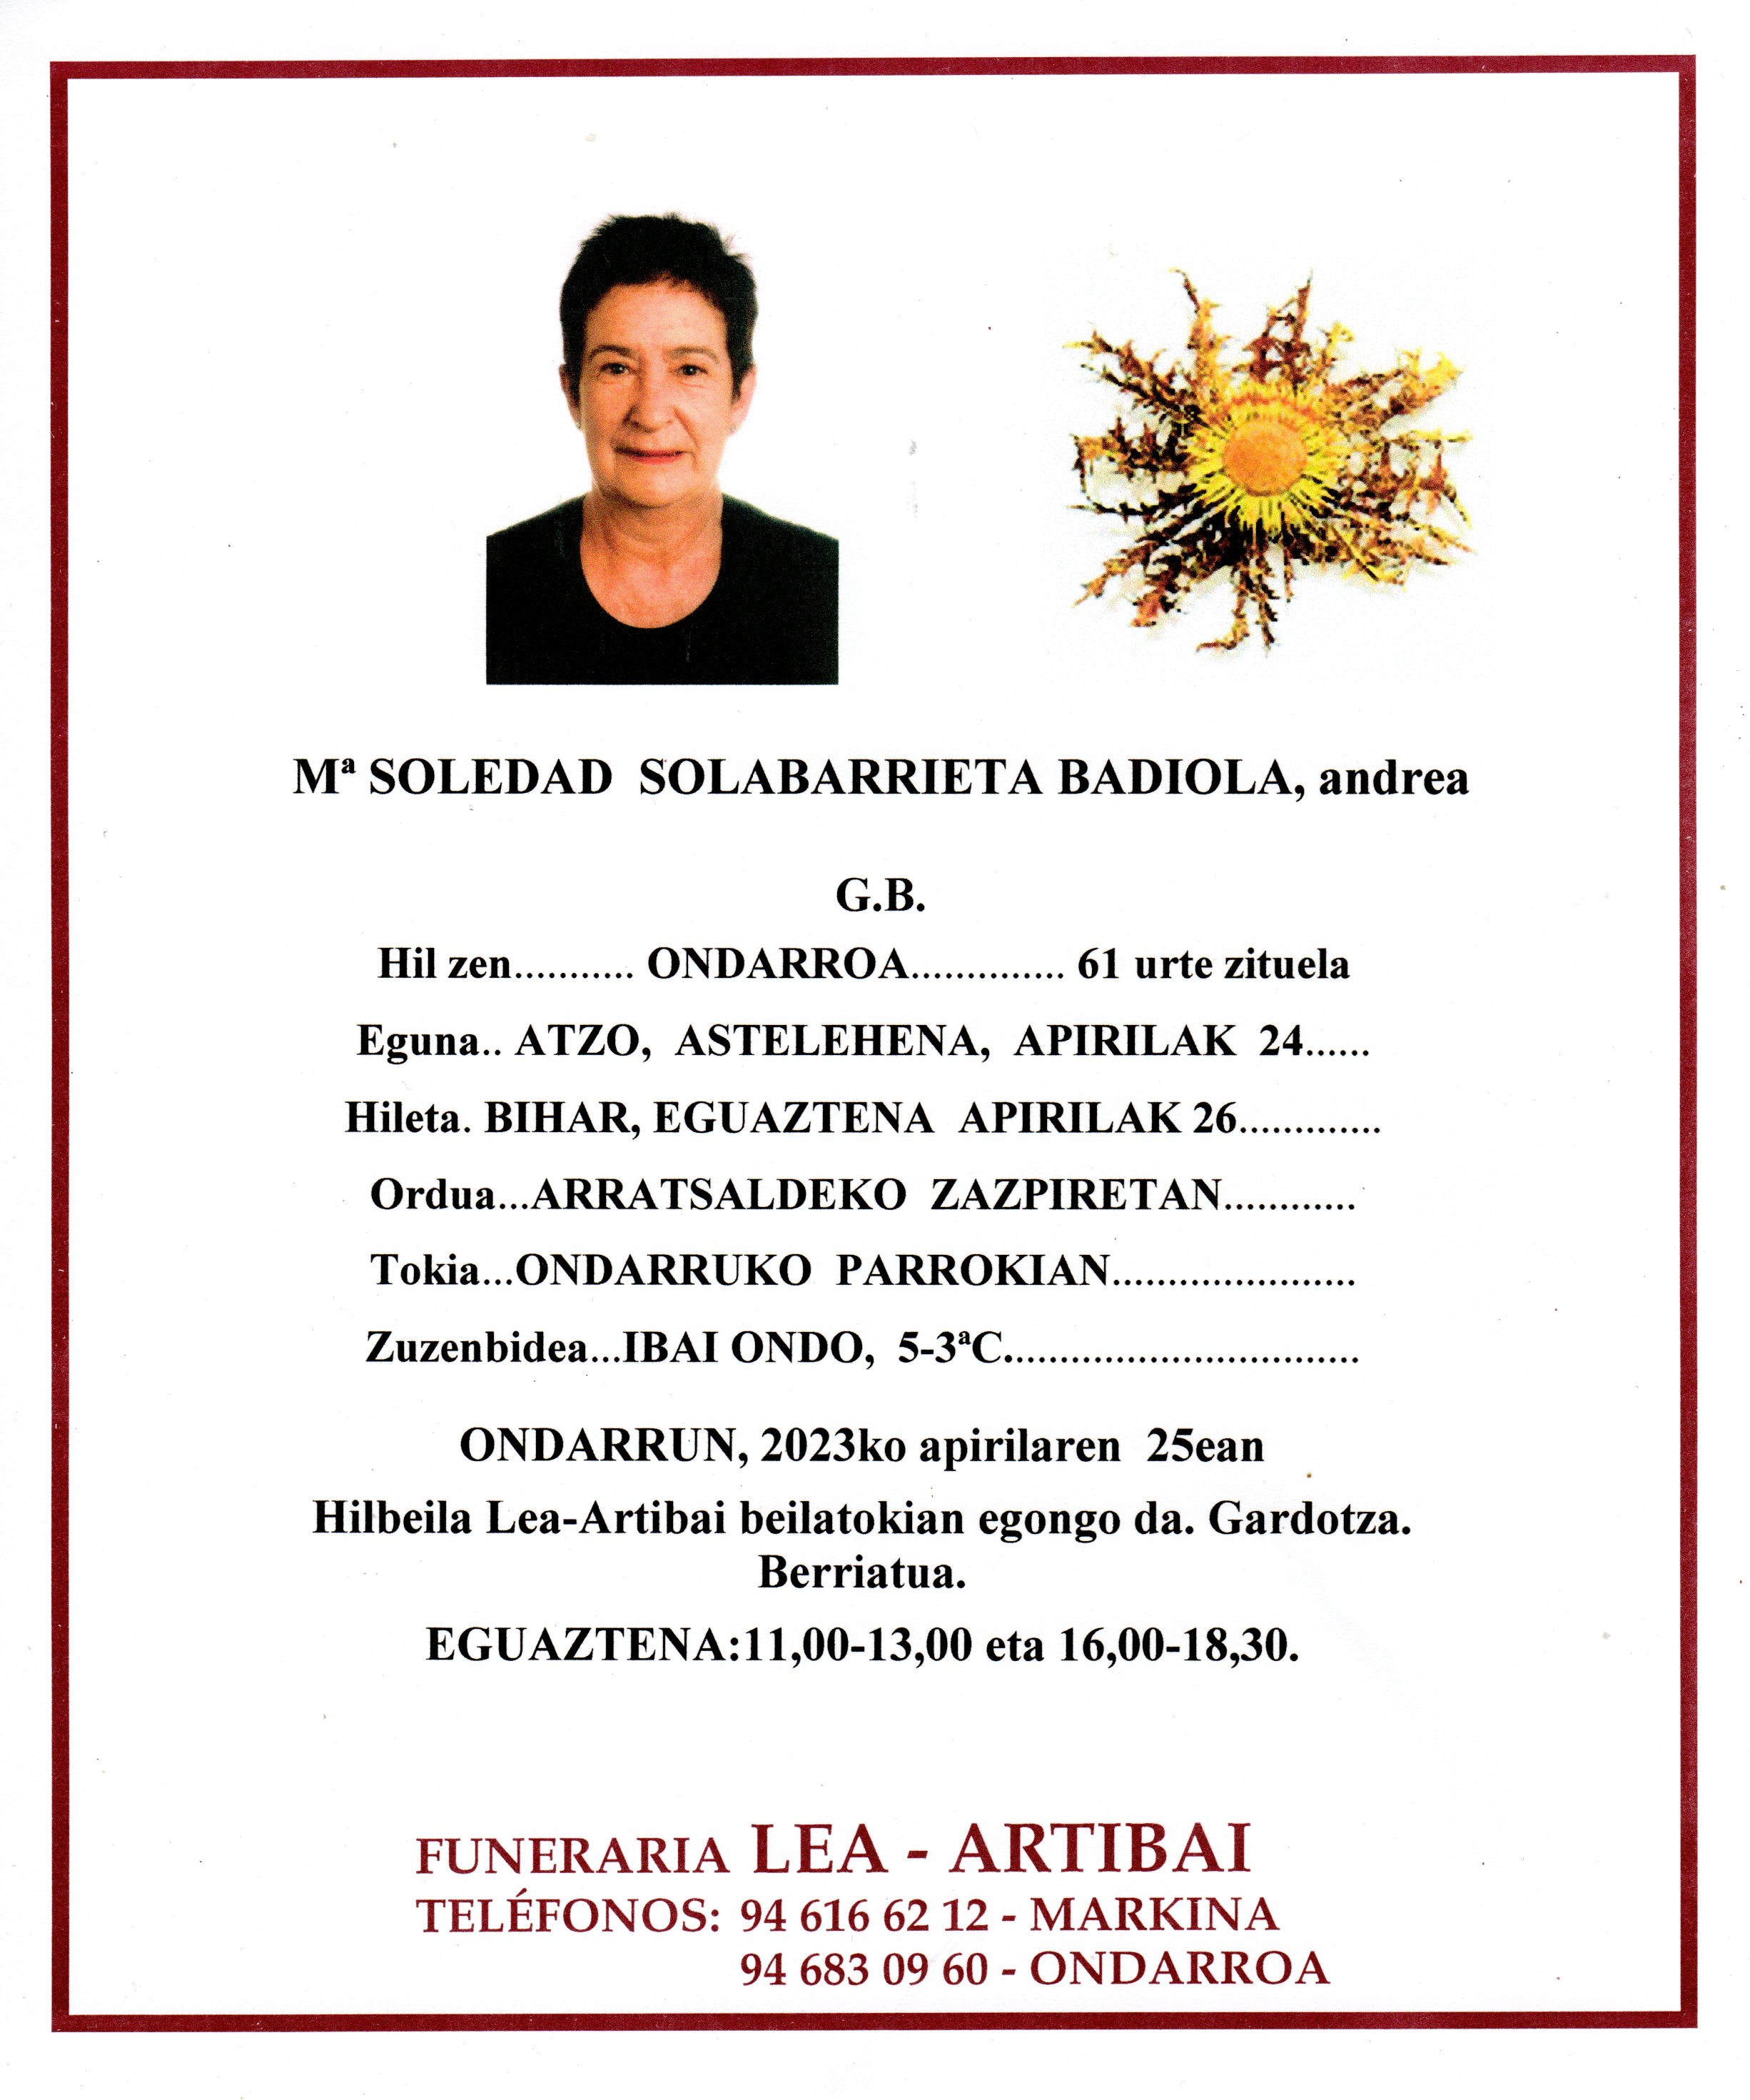 Maria Soledad Solabarrieta Badiola